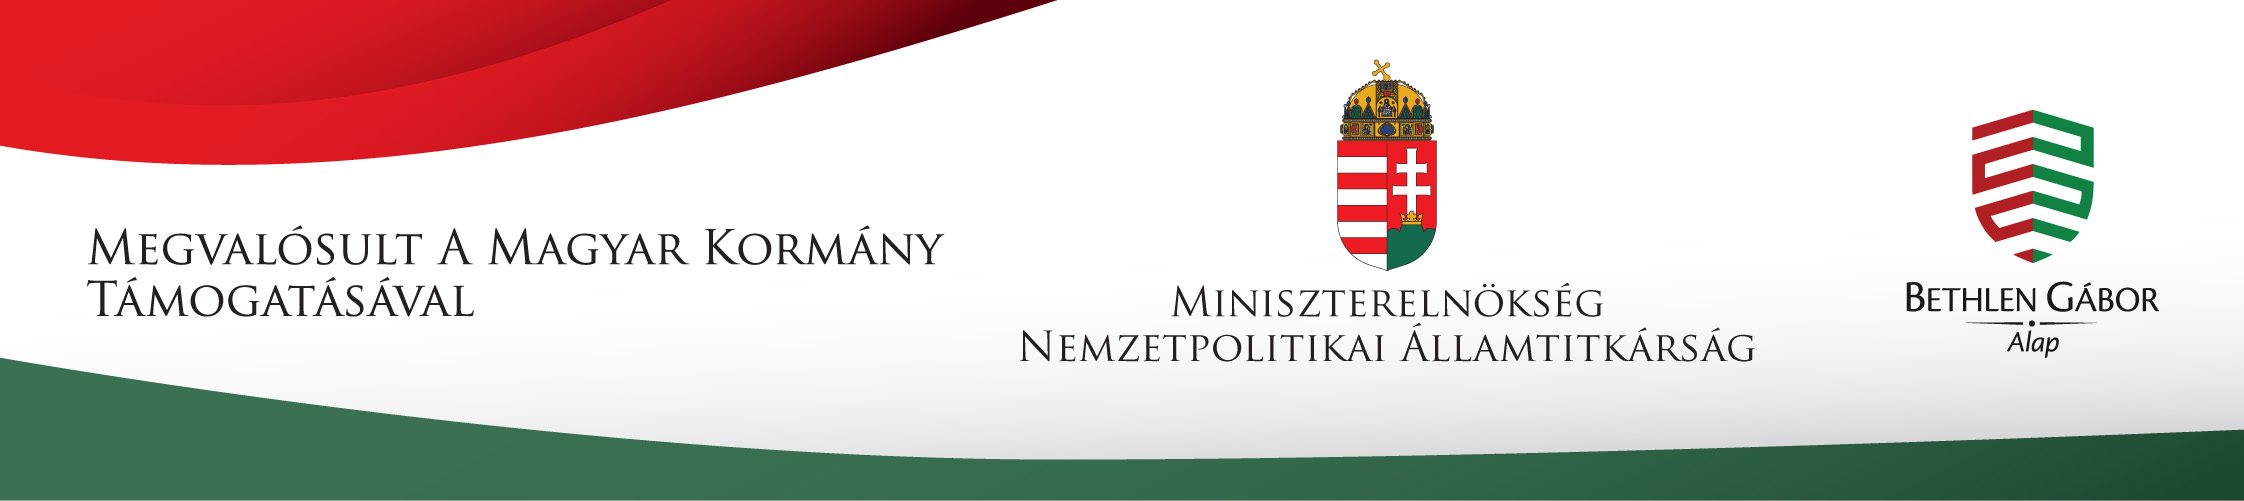 Kakasfőző Fesztivál - 2022. / Megvalósult a Magyar Kormány támogatávásal